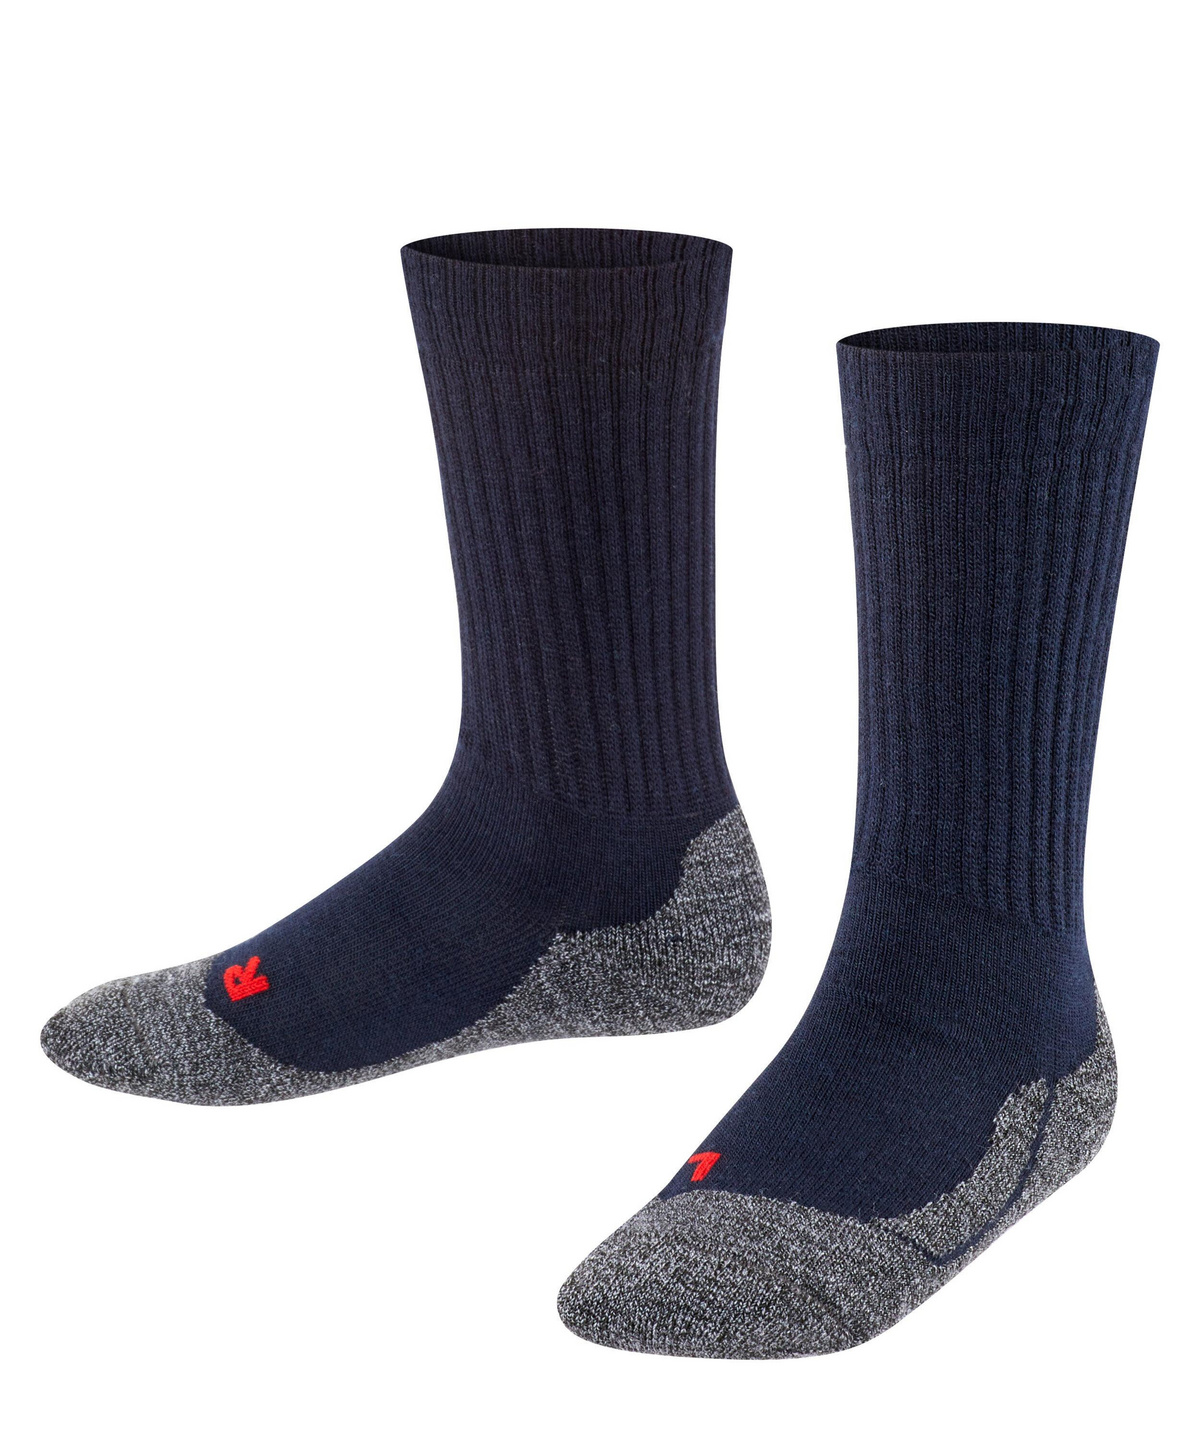 FALKE Socken Active Fair Isle Baumwolle Kinder grau blau viele weitere Farben verstärkte Kindersocken mit Muster atmungsaktiv dünn gegen Schweiß für aktive Kinder mit Norwegermuster 1 Paar 